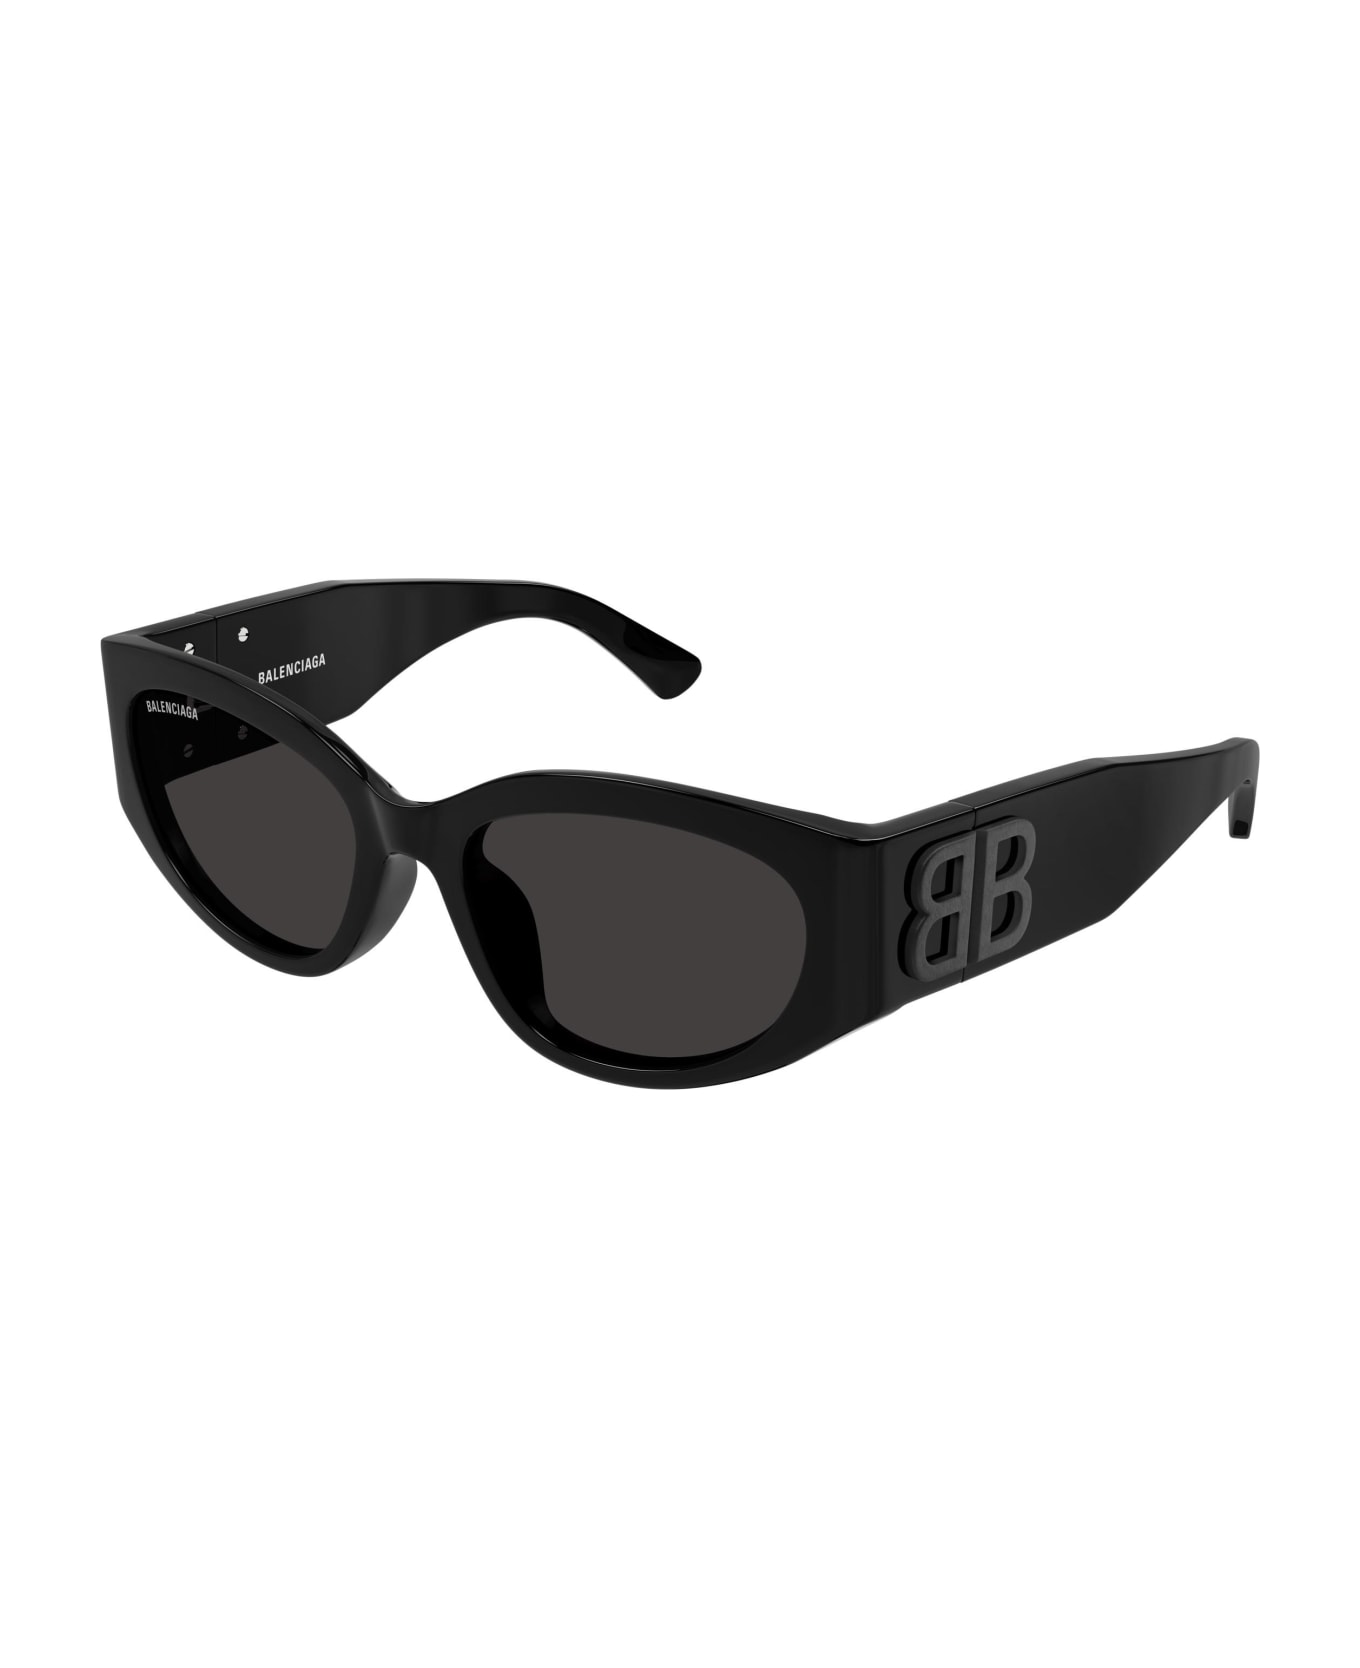 Balenciaga Eyewear Sunglasses - Nero/Grigio サングラス